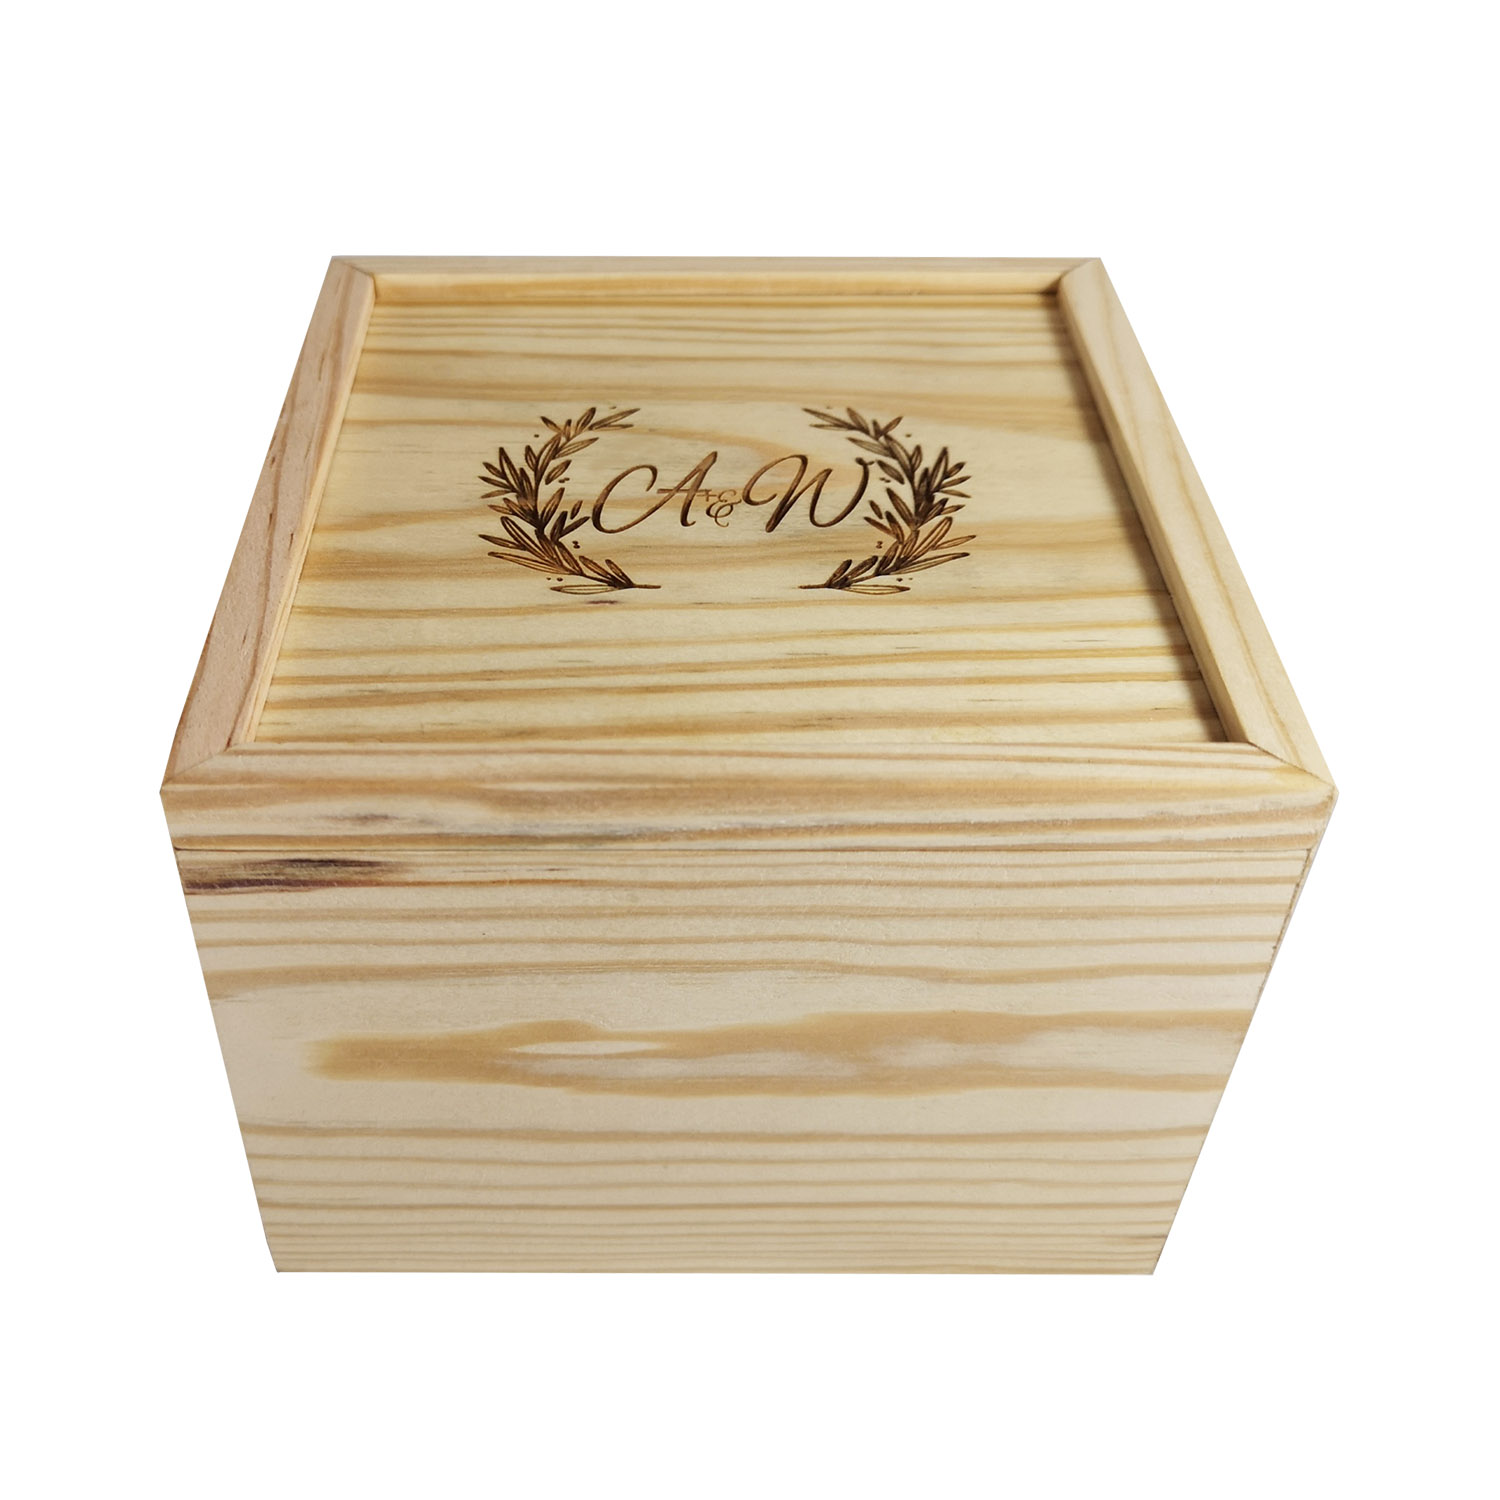 Monogram engraved wooden keepsake box